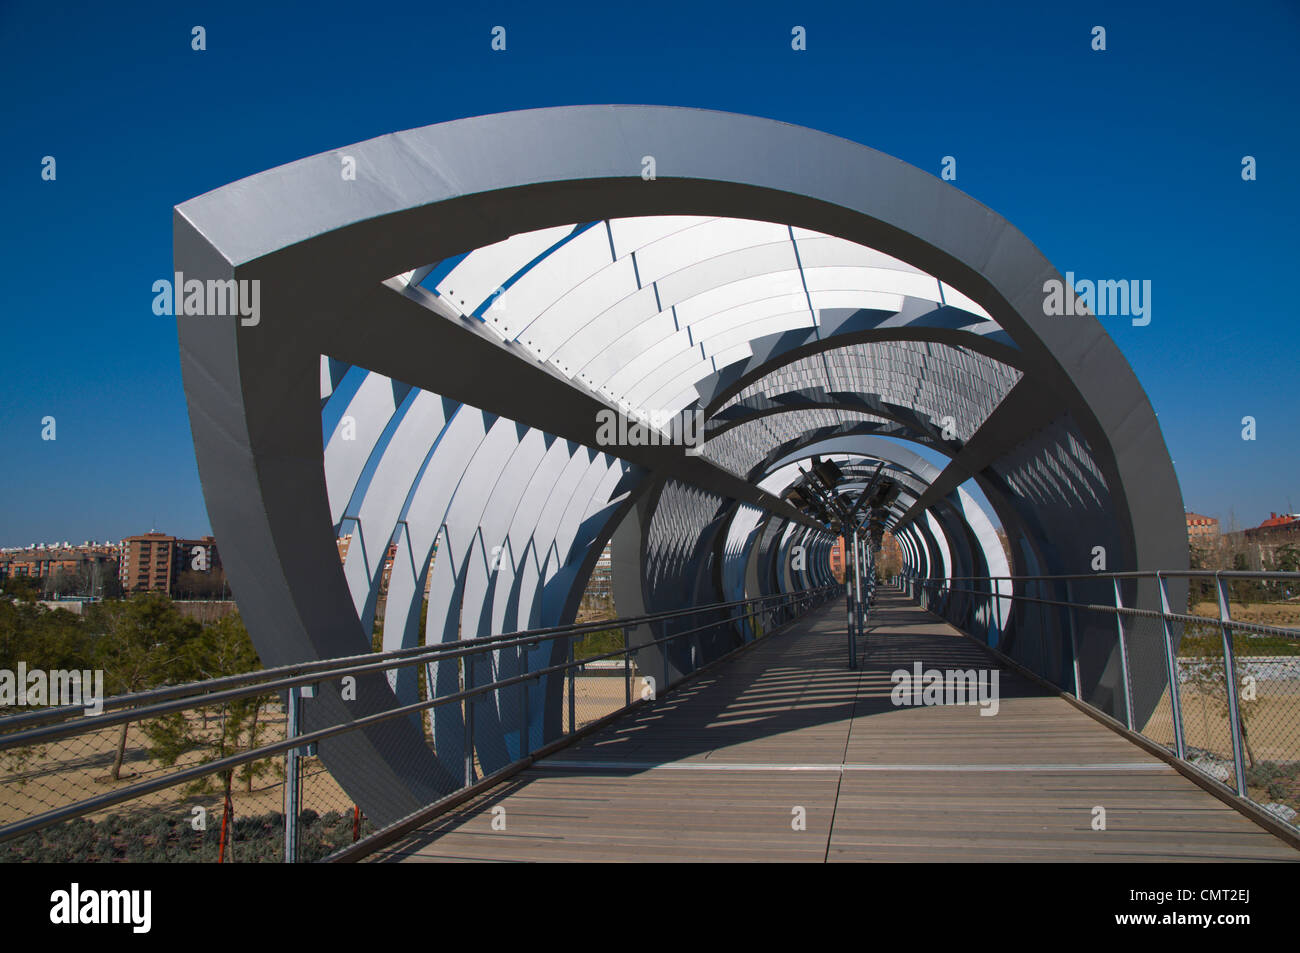 El Puente pont Arganzuela Madrid Rio dans un nouveau parc de loisirs autour de rivière Manzanares Madrid Espagne Europe Banque D'Images